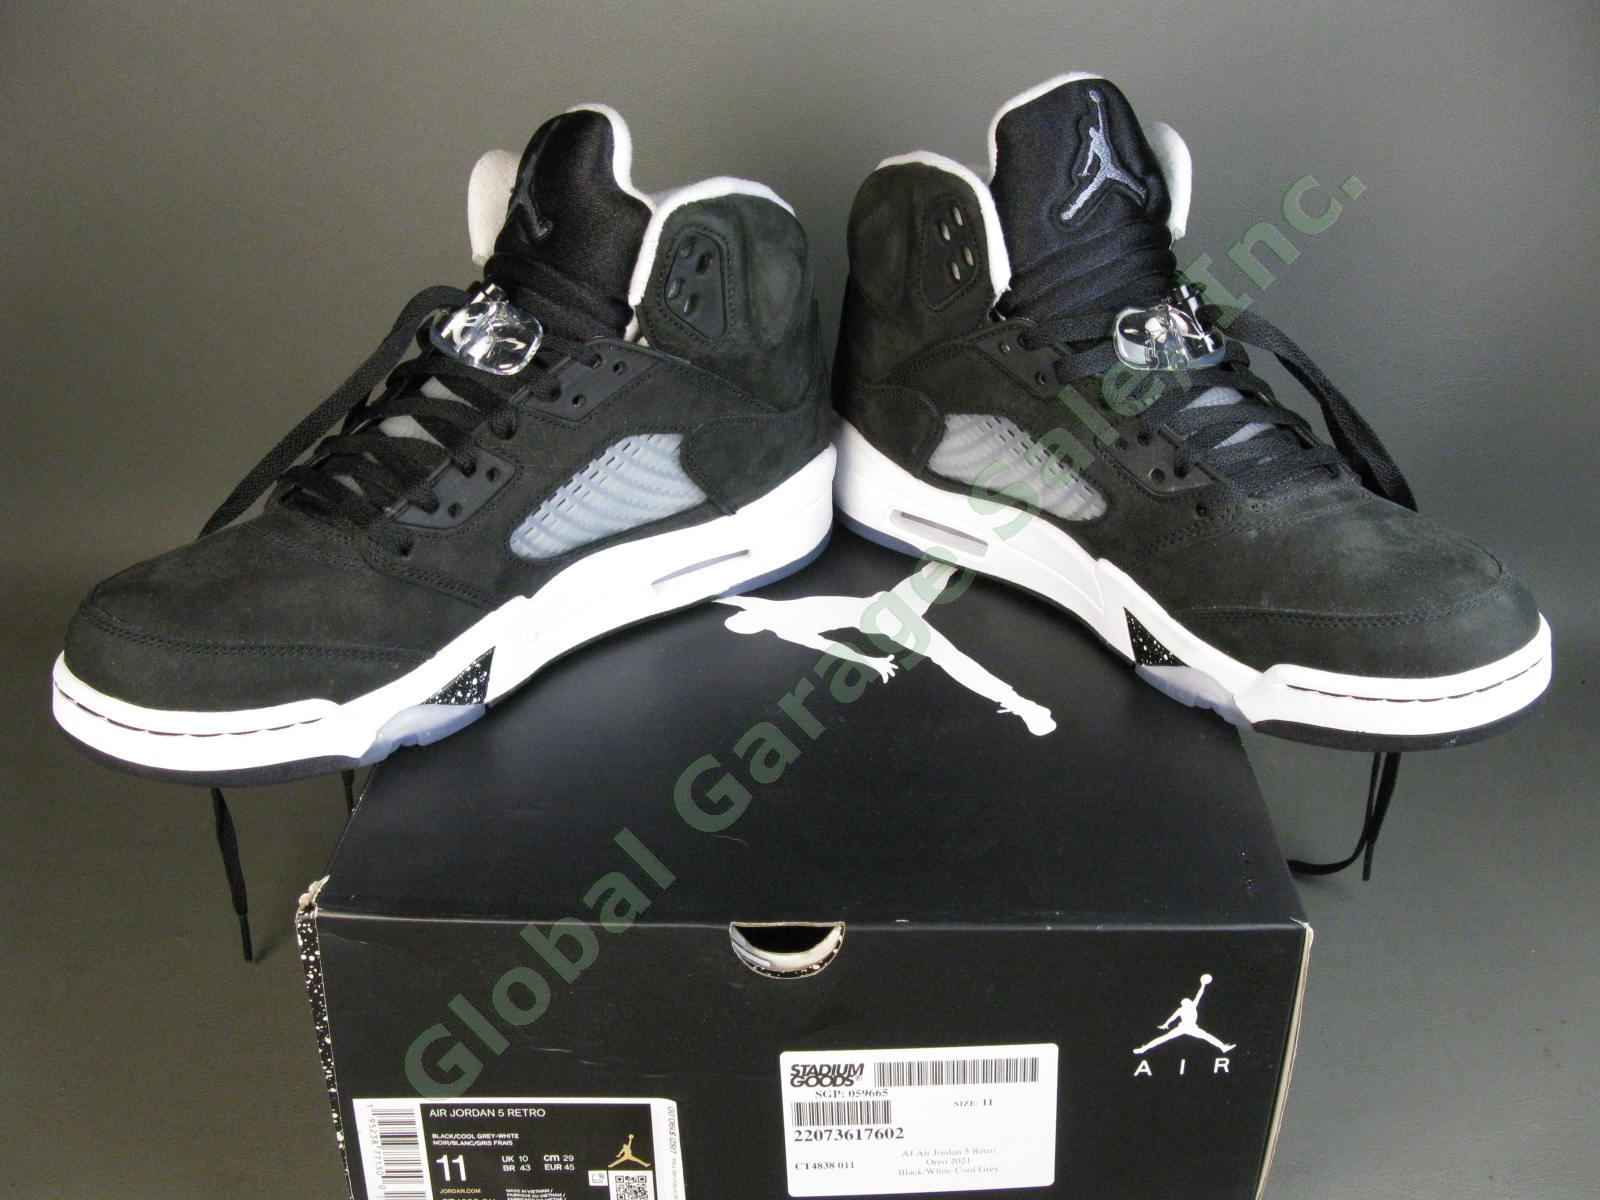 Nike Air Jordan AJ Retro 5 Moonlight Oreo Cookie CT4838 011 Black White US 11 NR 7